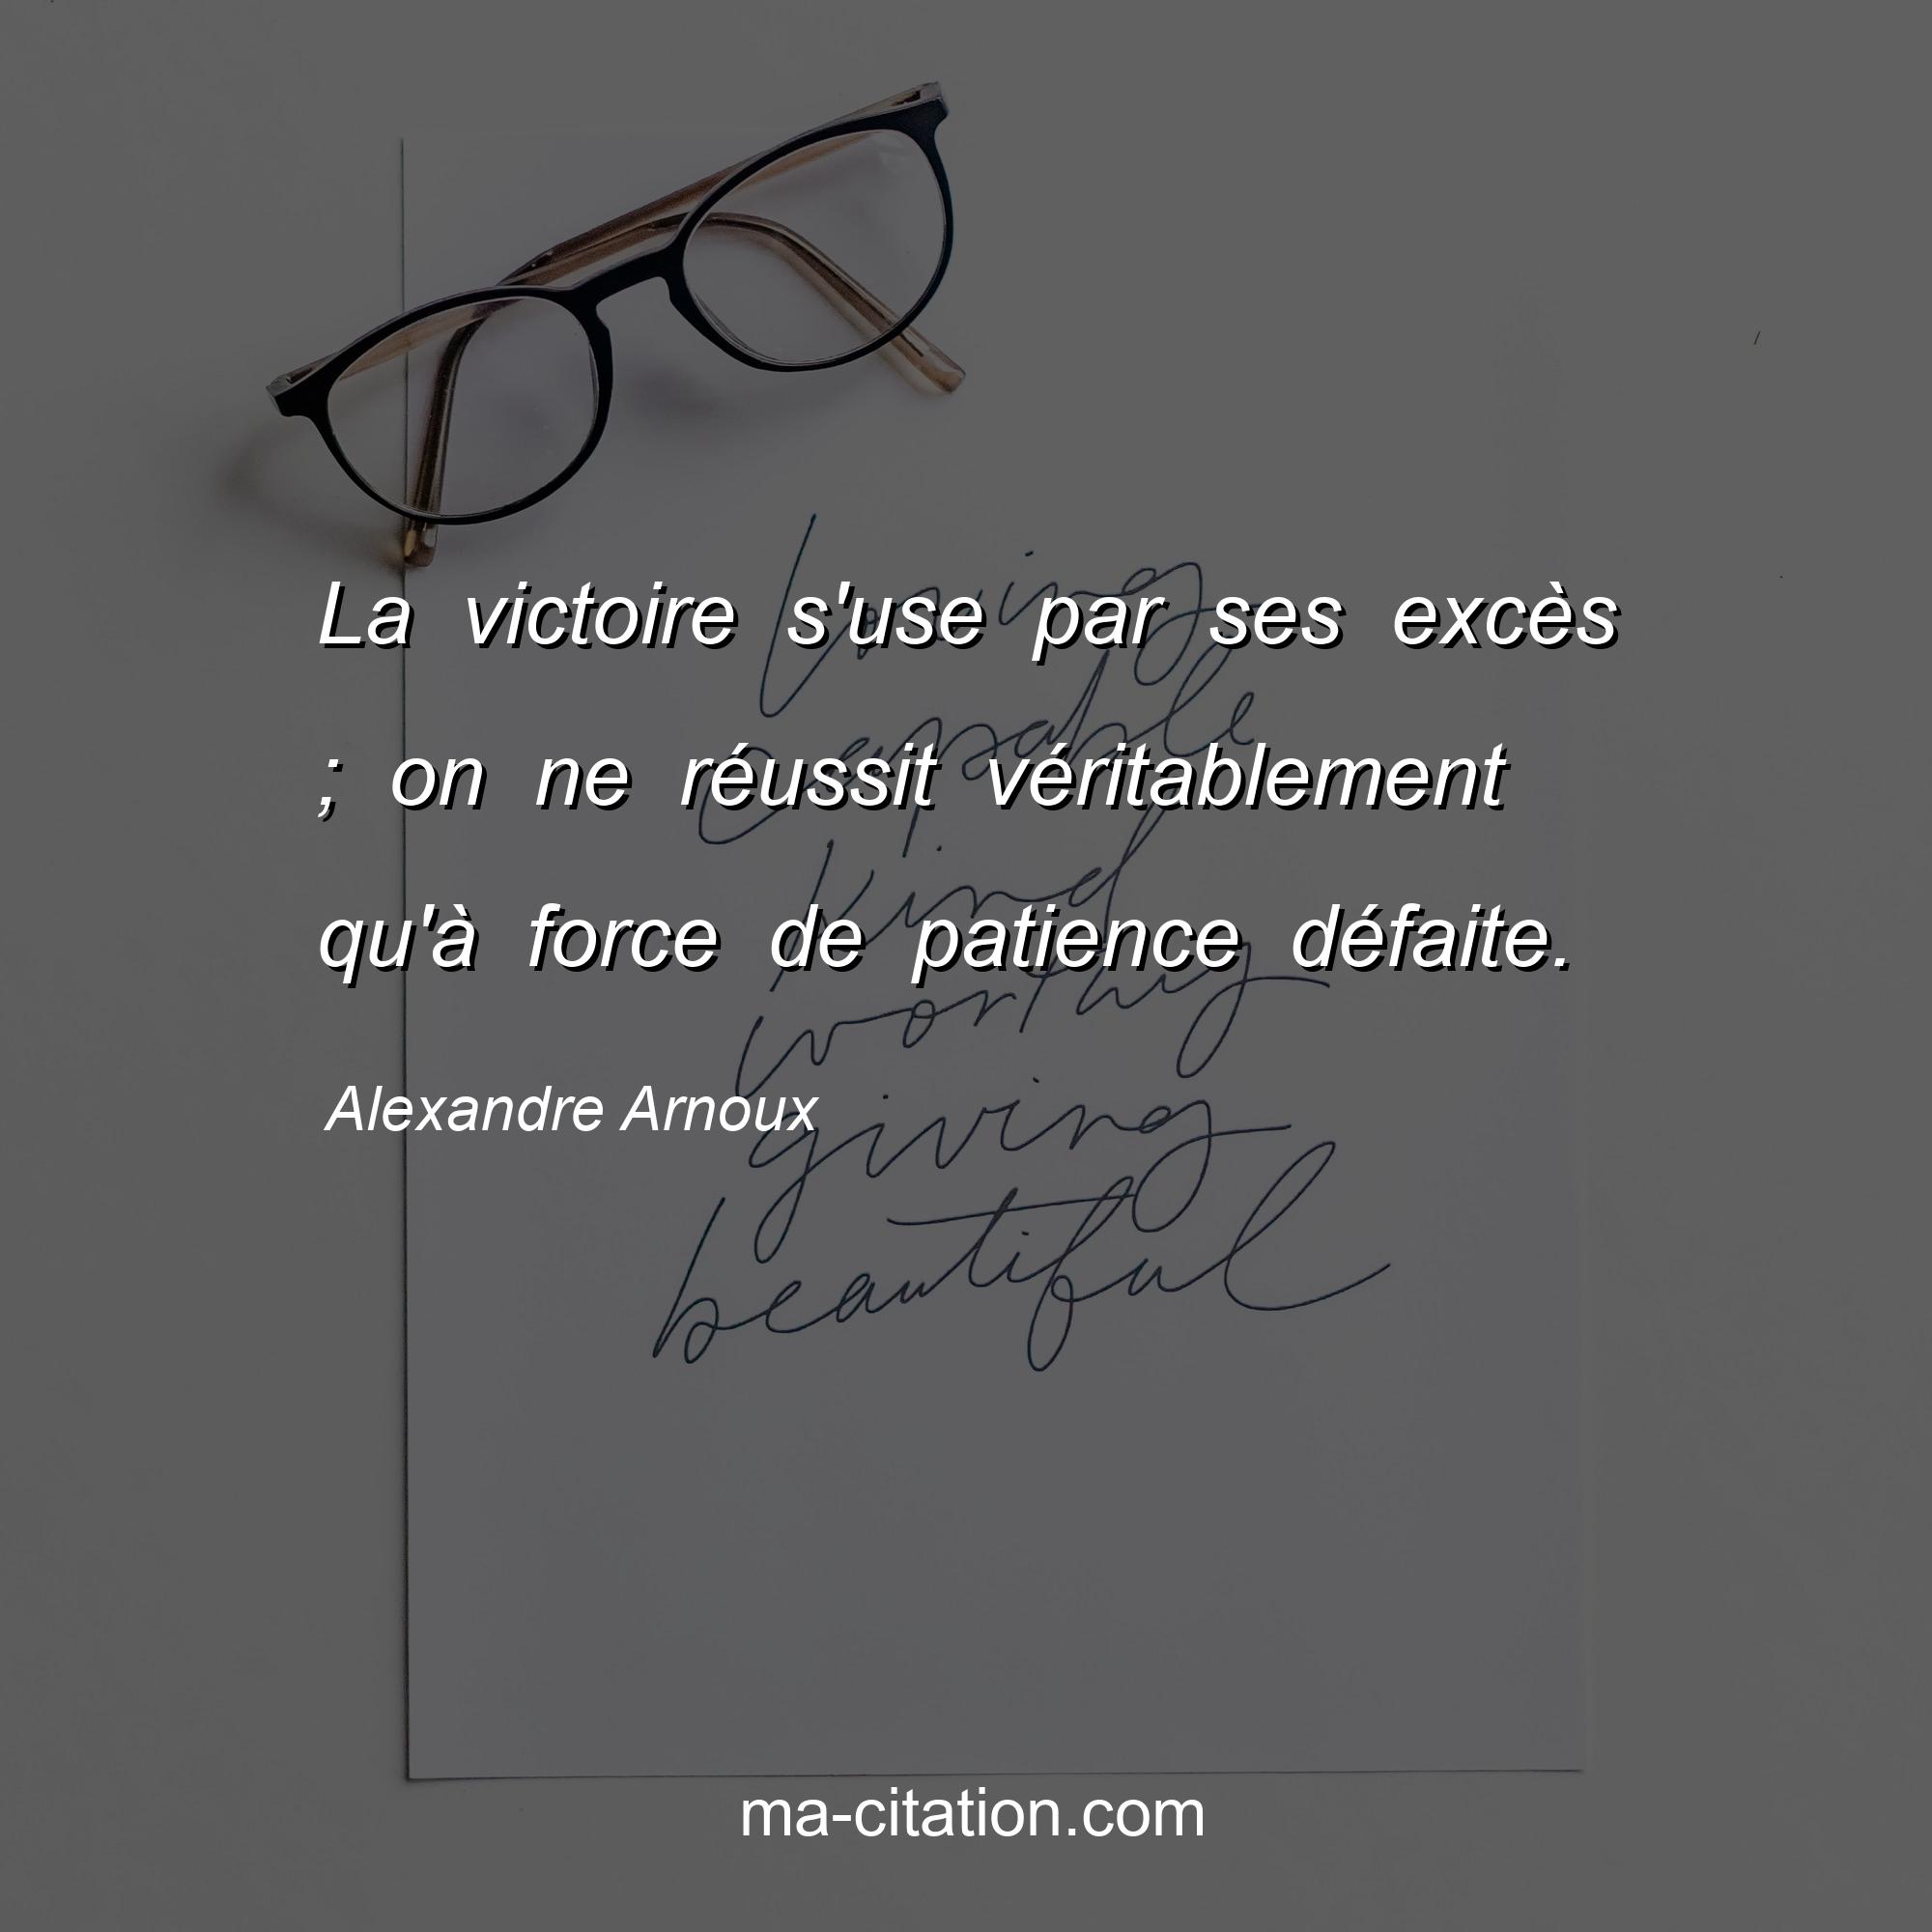 Alexandre Arnoux : La victoire s'use par ses excès ; on ne réussit véritablement qu'à force de patience défaite.